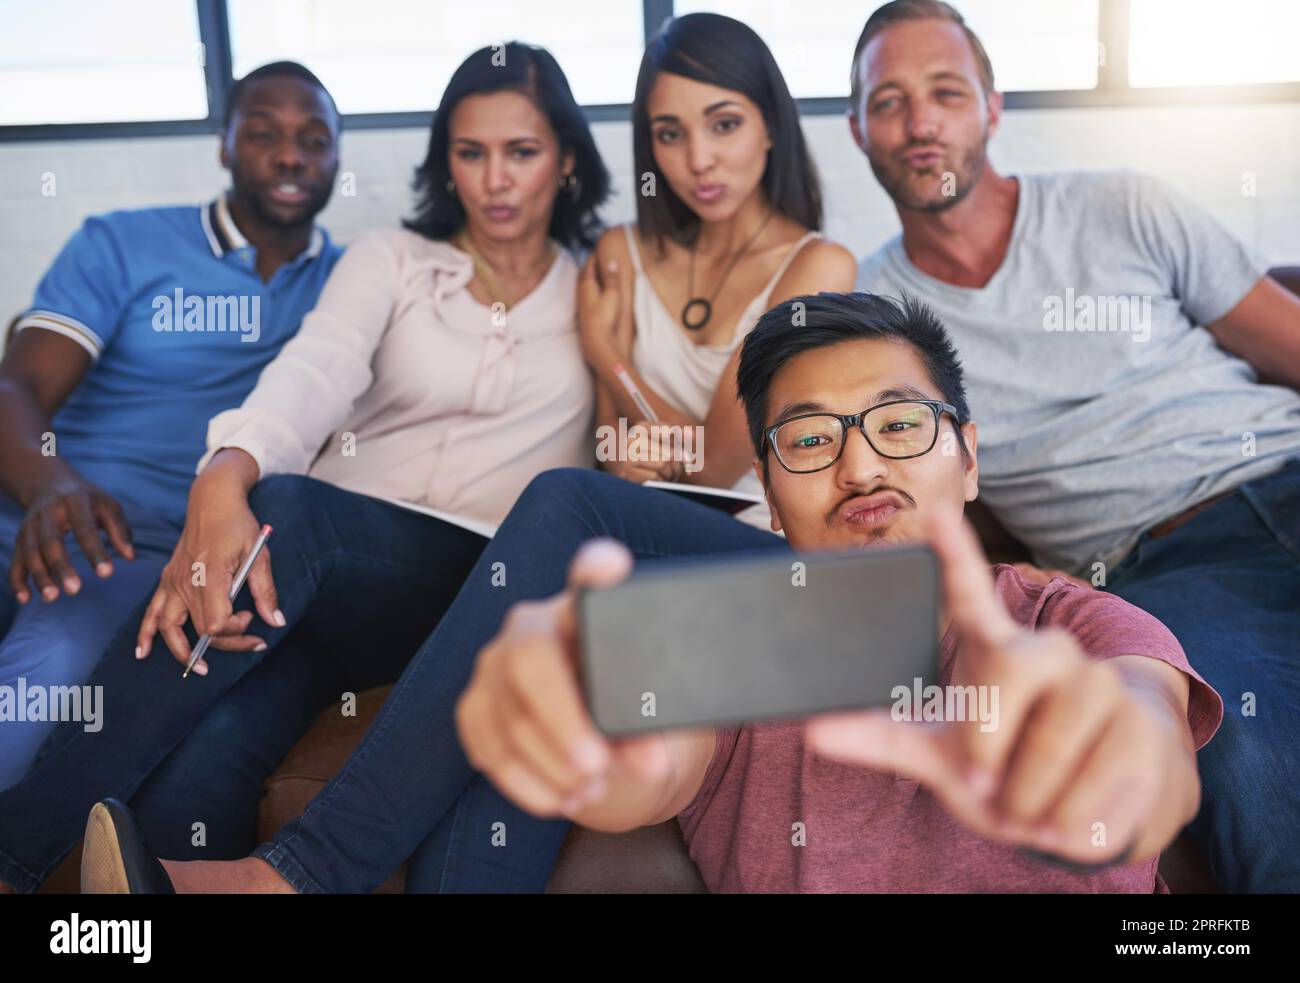 Mettere i loro volti selfie. Un gruppo felice di colleghi creativi in posa per un selfie insieme in ufficio. Foto Stock